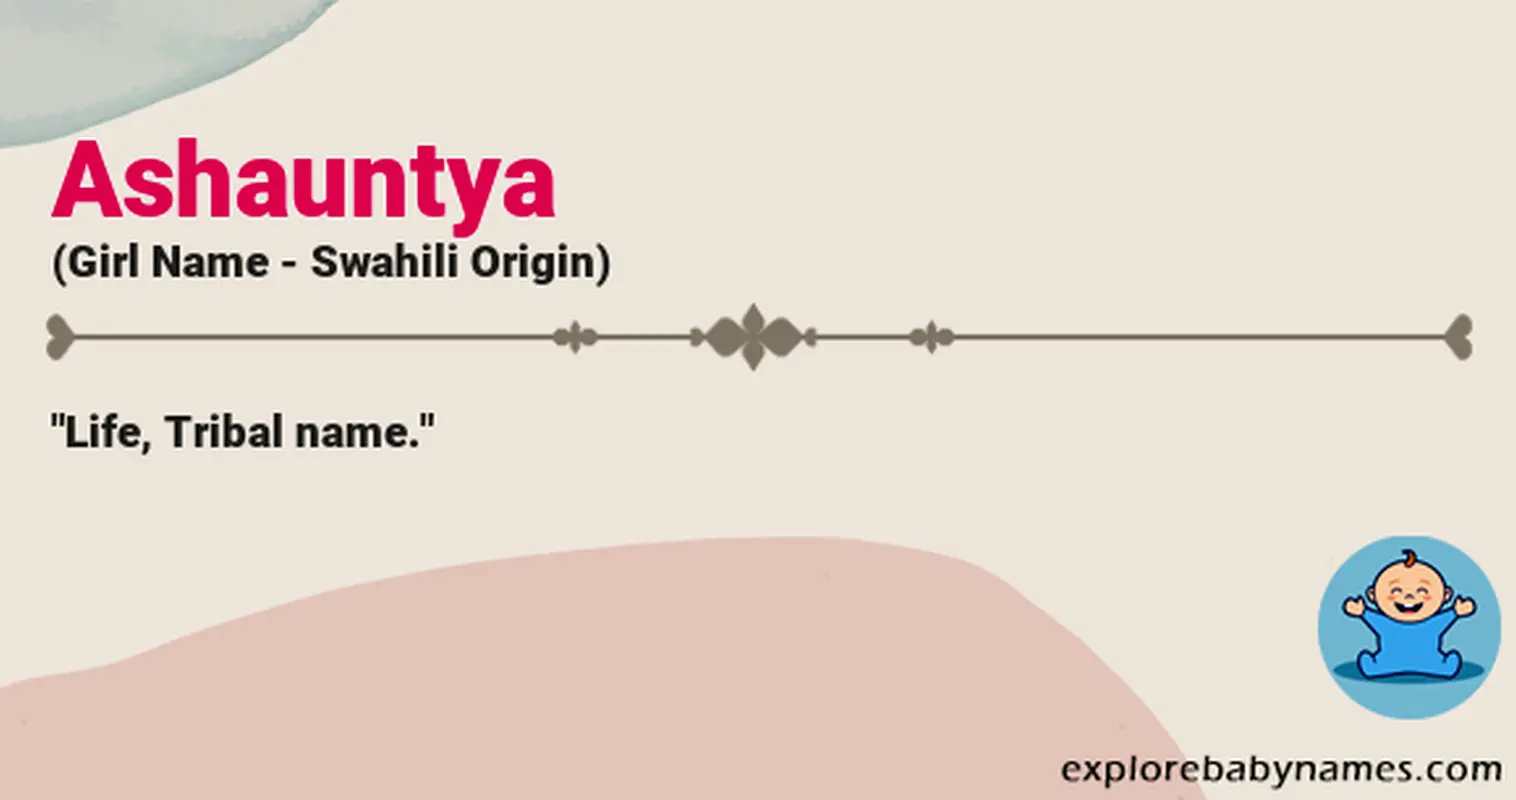 Meaning of Ashauntya